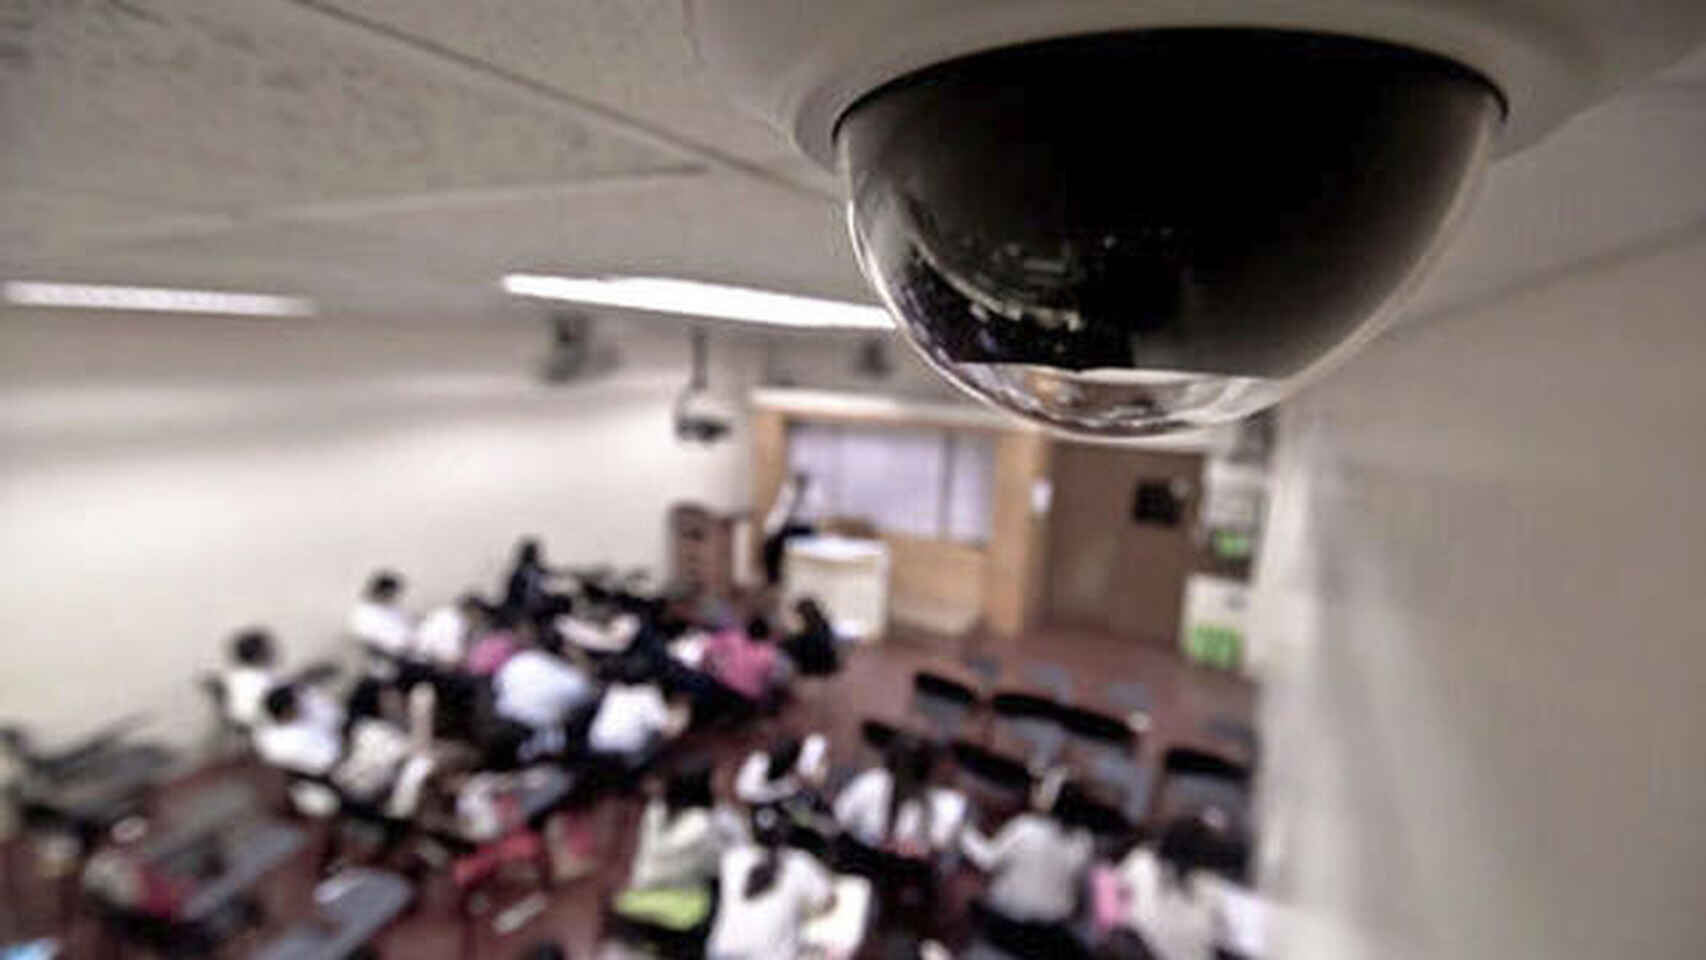 Agencia Espanola Proteccion Datos camaras de seguridad en colegios 3